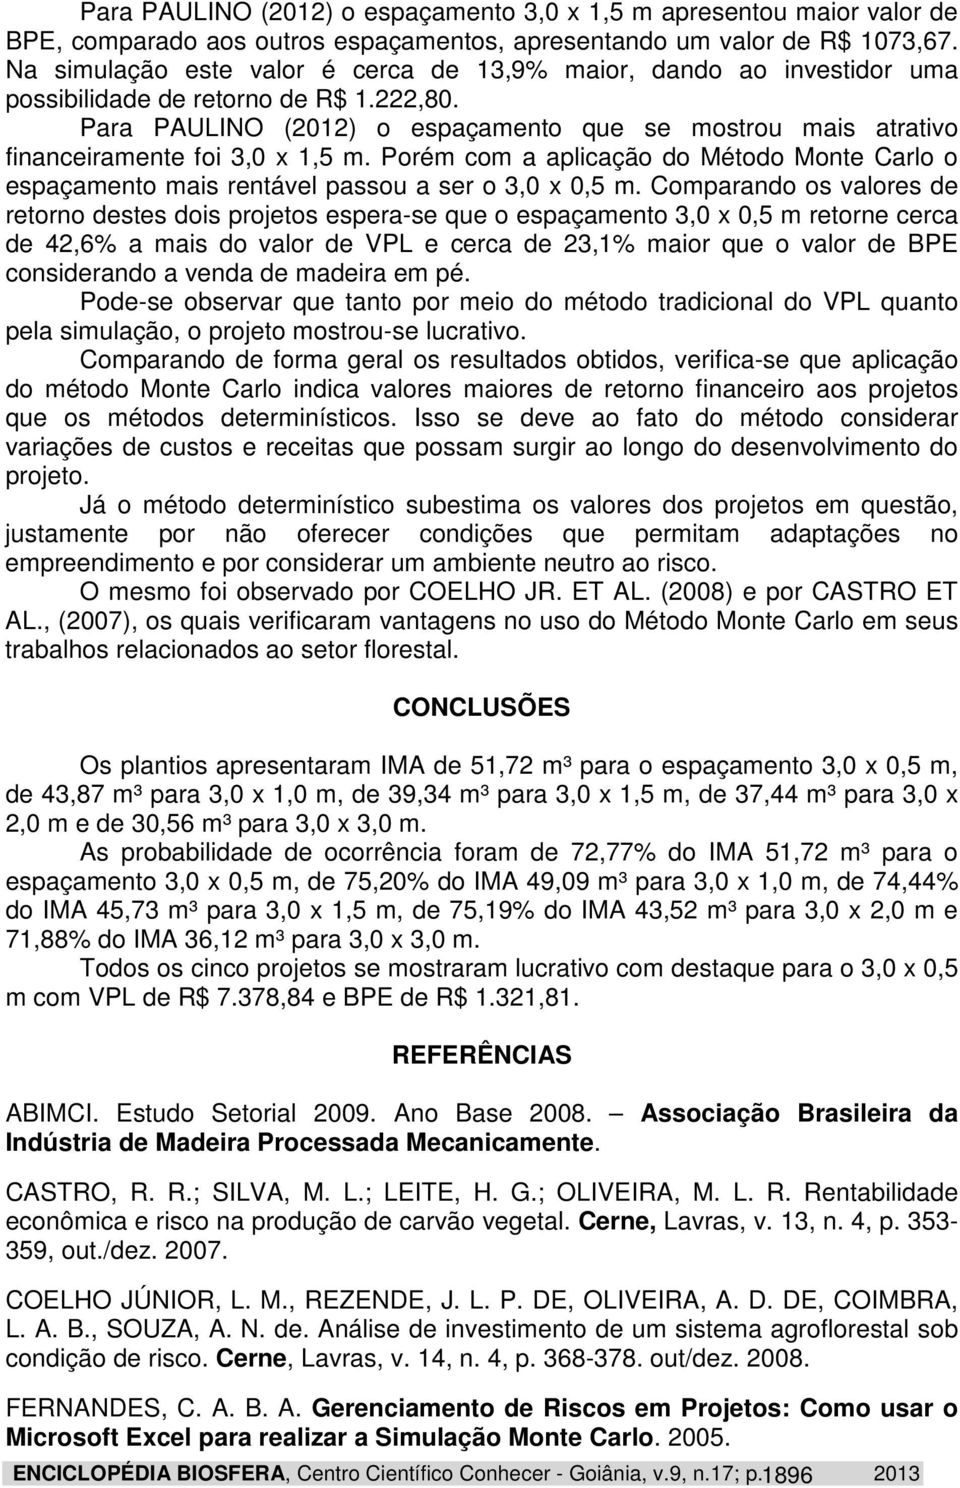 Para PAULINO (2012) o espaçamento que se mostrou mais atrativo financeiramente foi 3,0 x 1,5 m. Porém com a aplicação do Método Monte Carlo o espaçamento mais rentável passou a ser o 3,0 x 0,5 m.